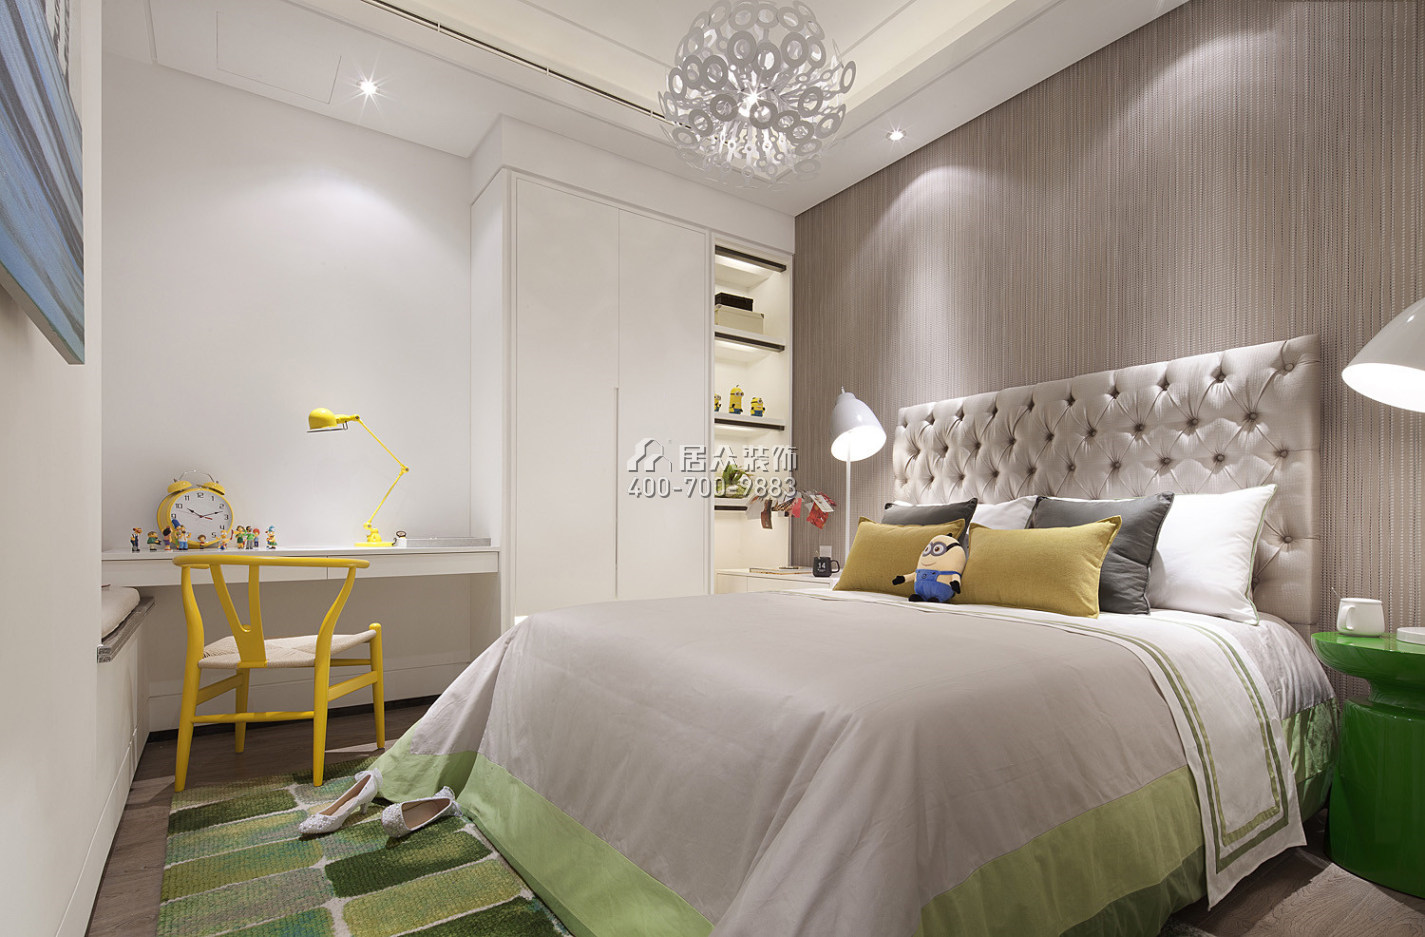 领航城领秀花园76平方米现代简约风格平层户型卧室装修效果图